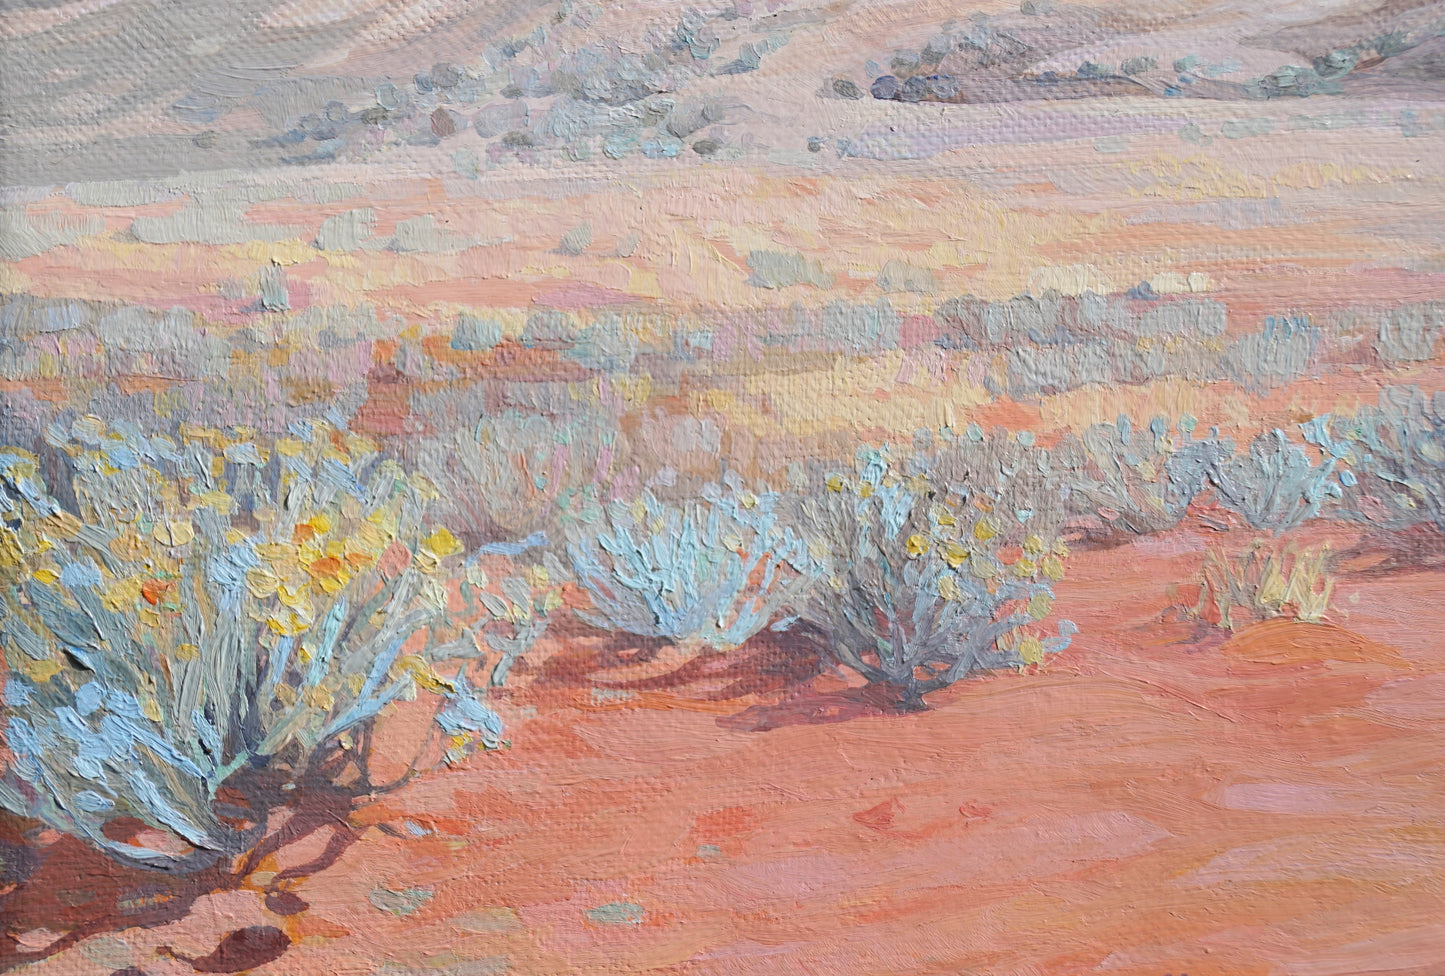 Desert and Blue Bush Landscape painting by Australian artist Jaime Prosser